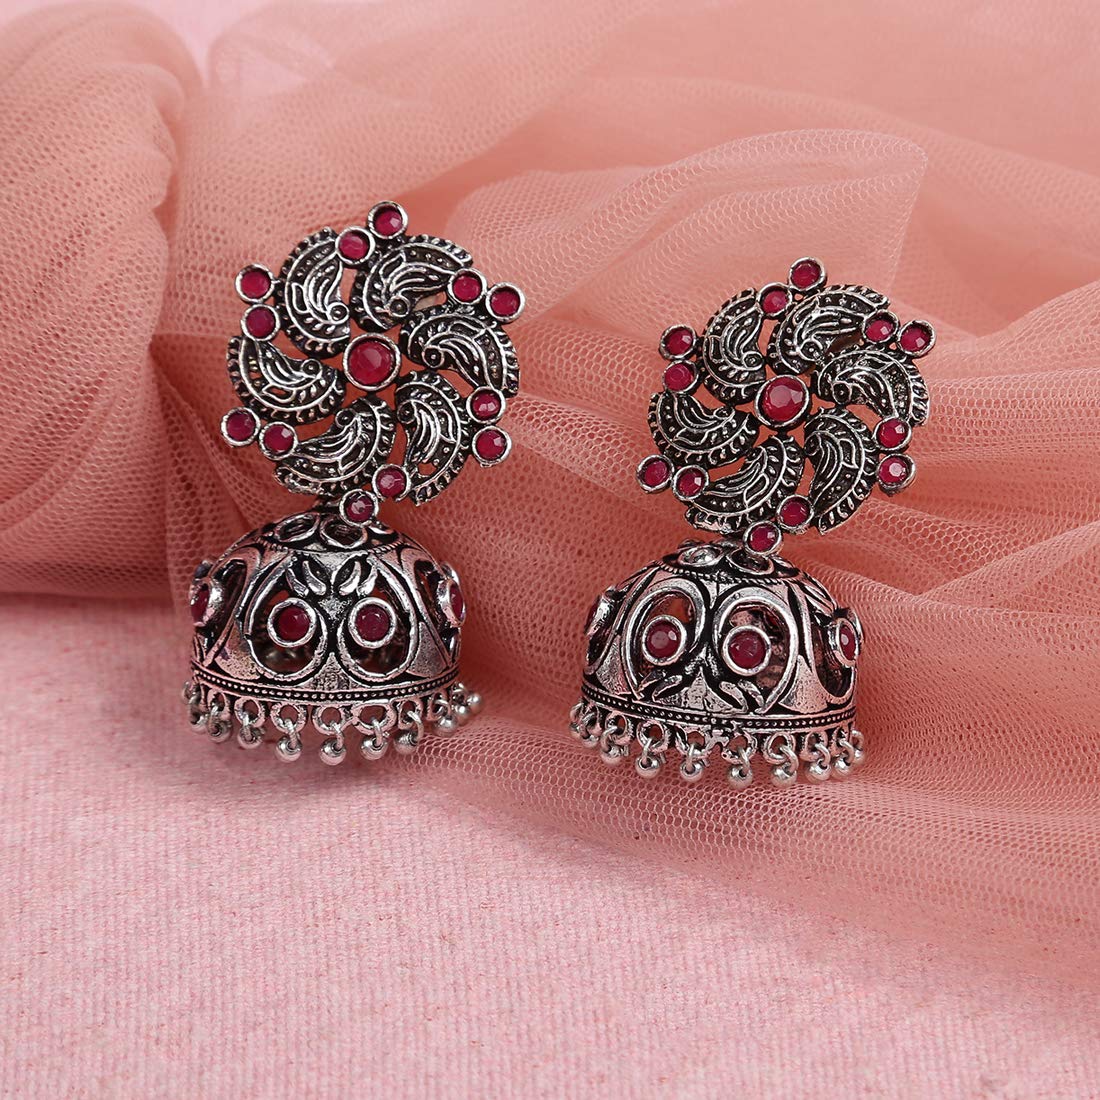 Buy Women's Oxidized Jhumka Earrings in Silver | Jhumka Earrings Set -  (ER-3221) — Karmaplace